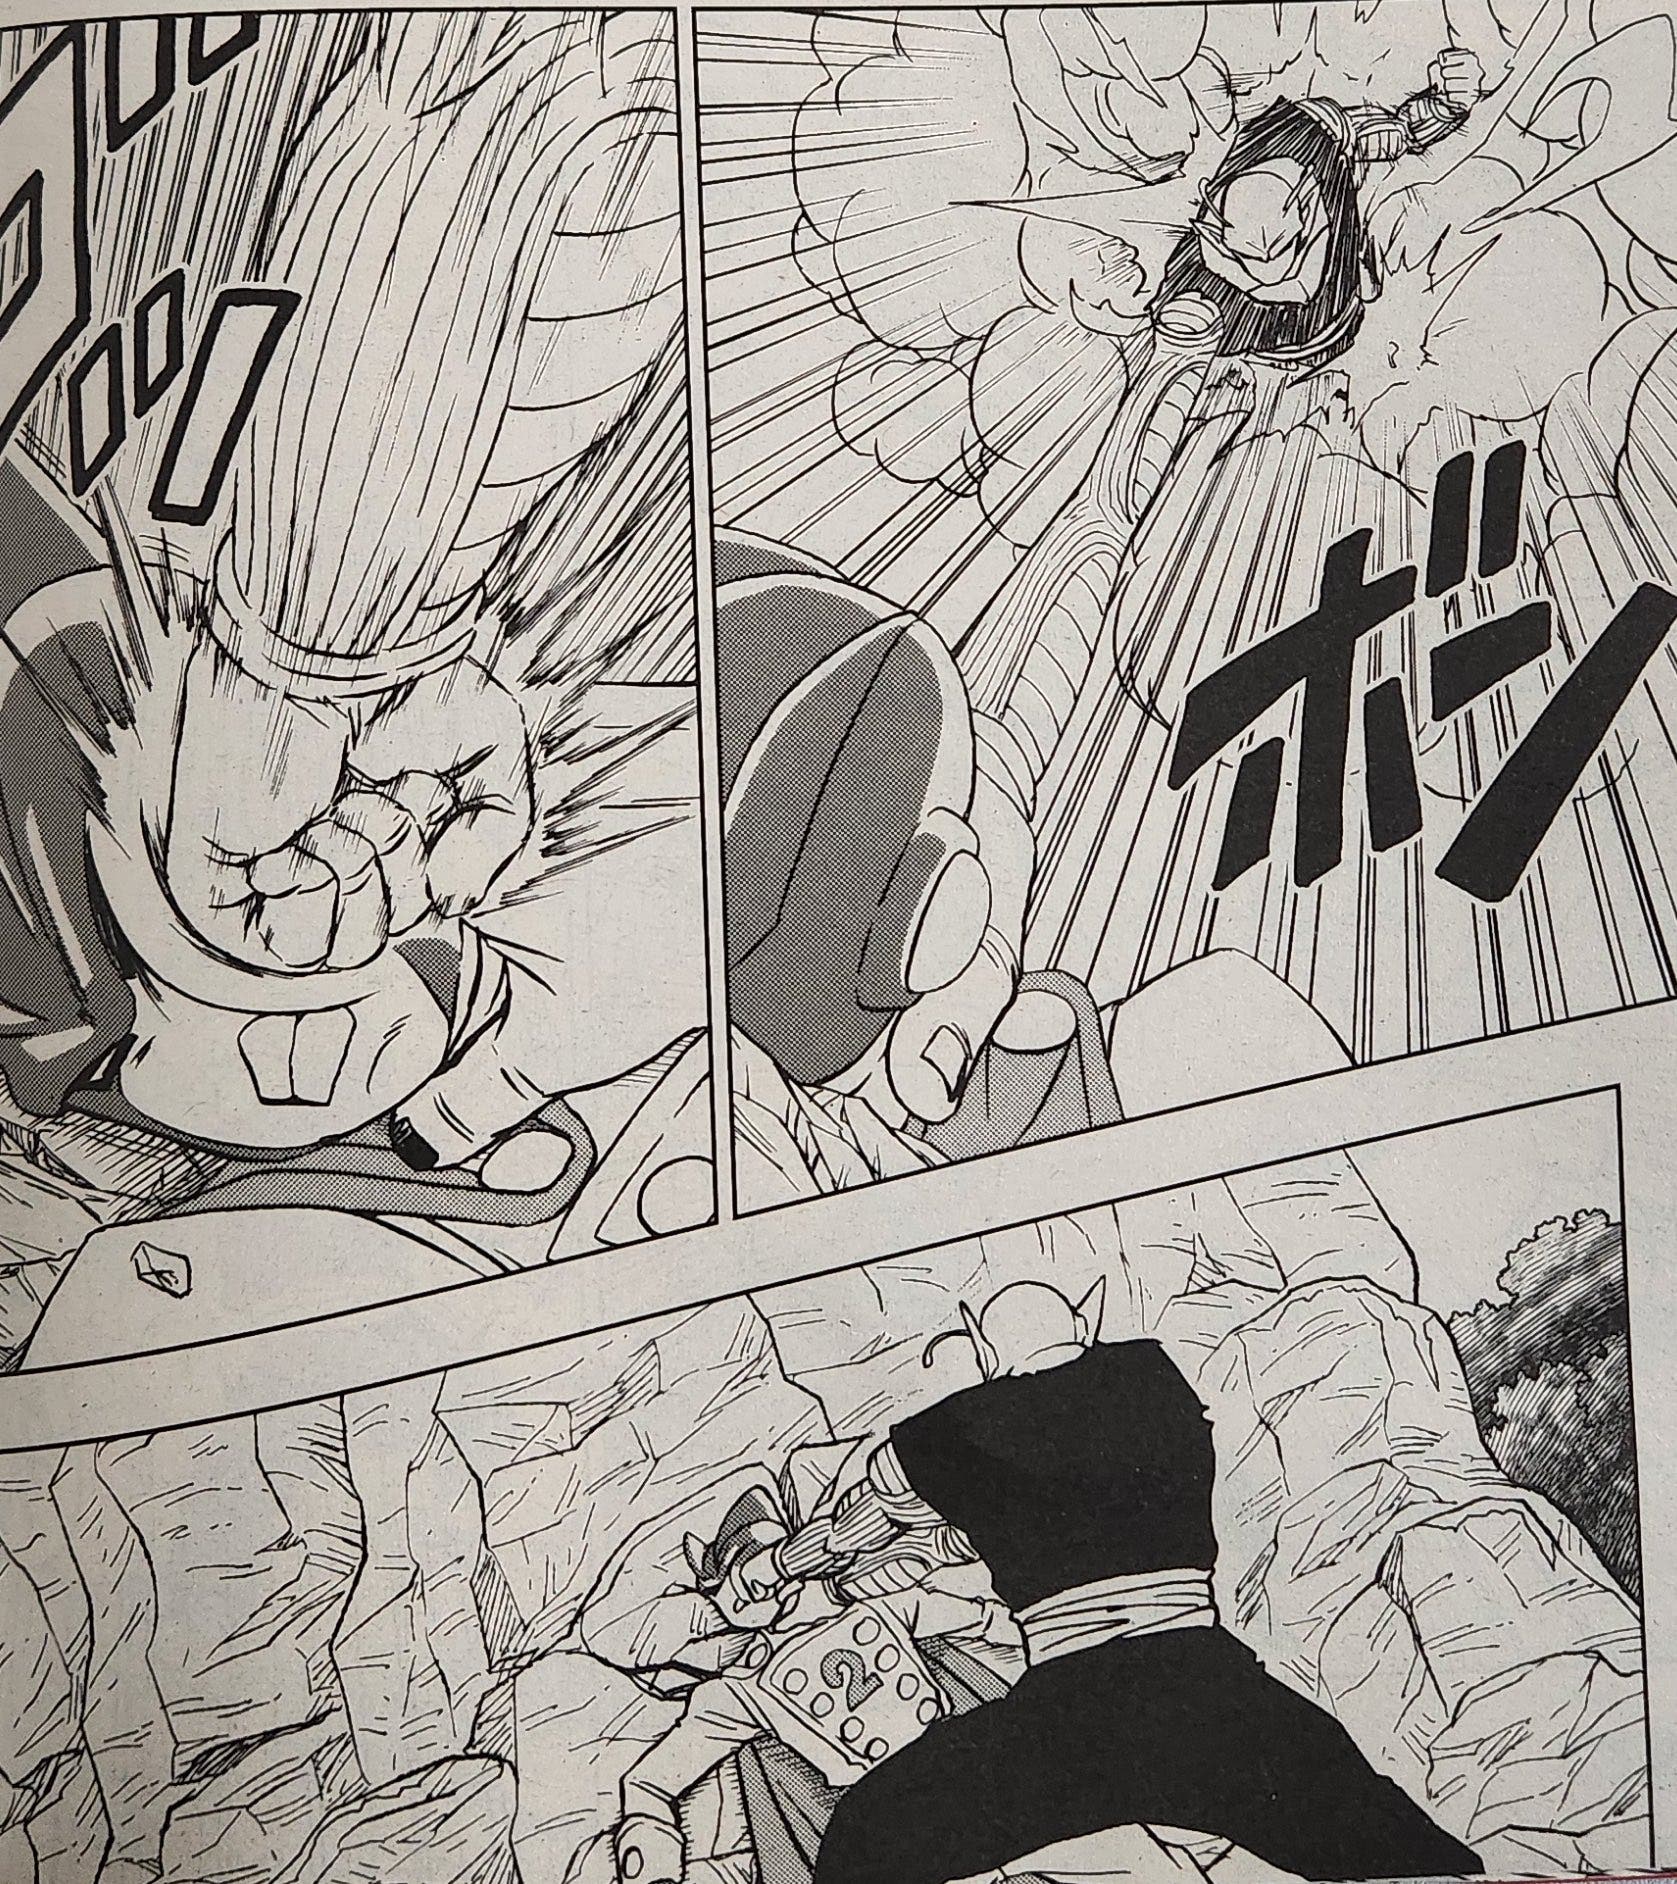 Dragon Ball Super: Filtrado al completo el capítulo 93 del manga con nuevas  imágenes